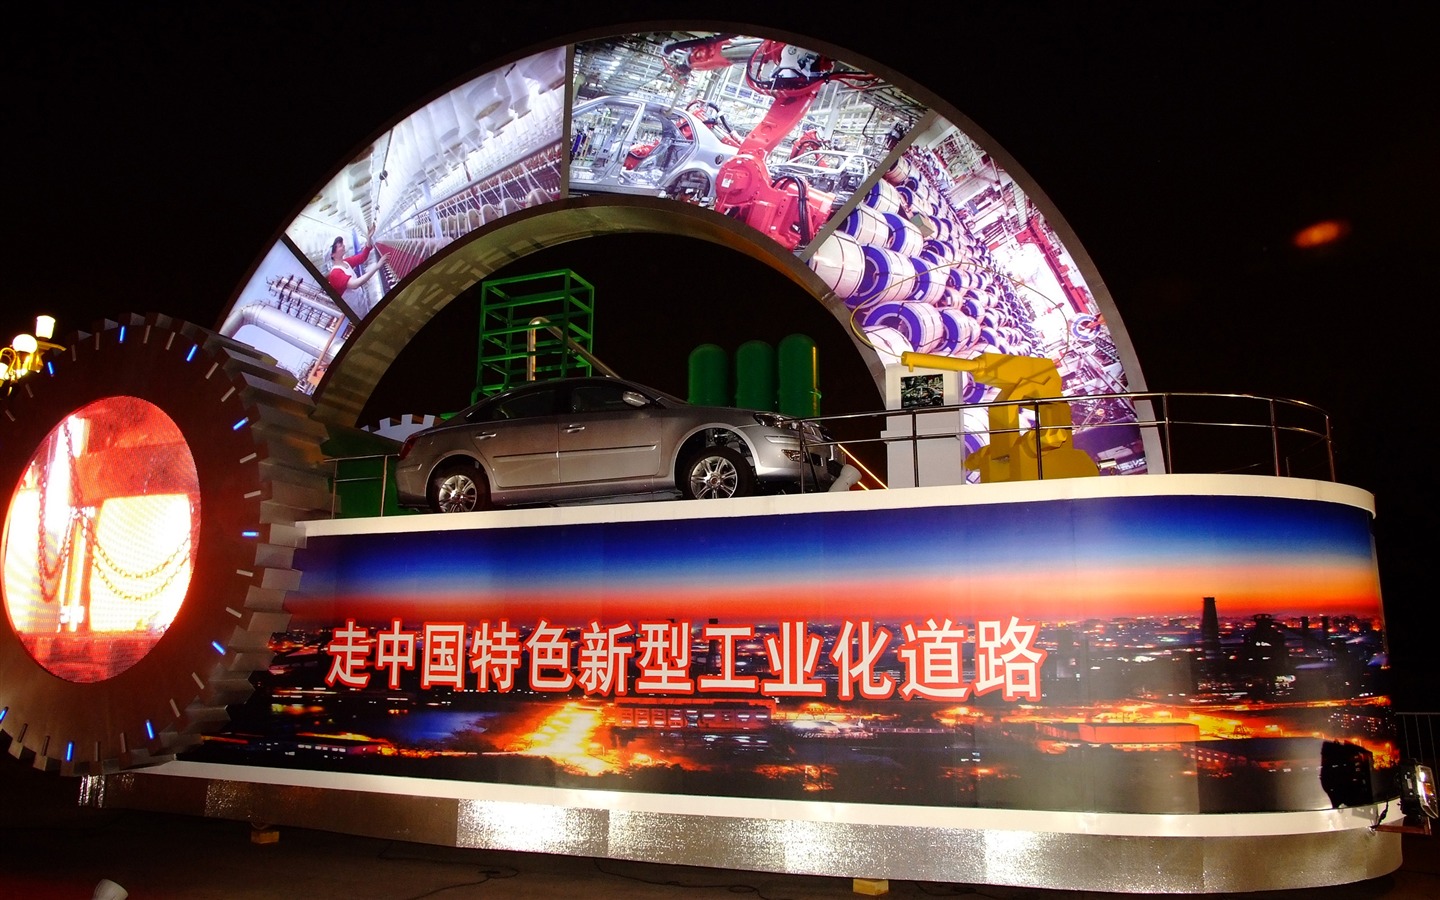 La Plaza de Tiananmen colorida noche (obras barras de refuerzo) #44 - 1440x900